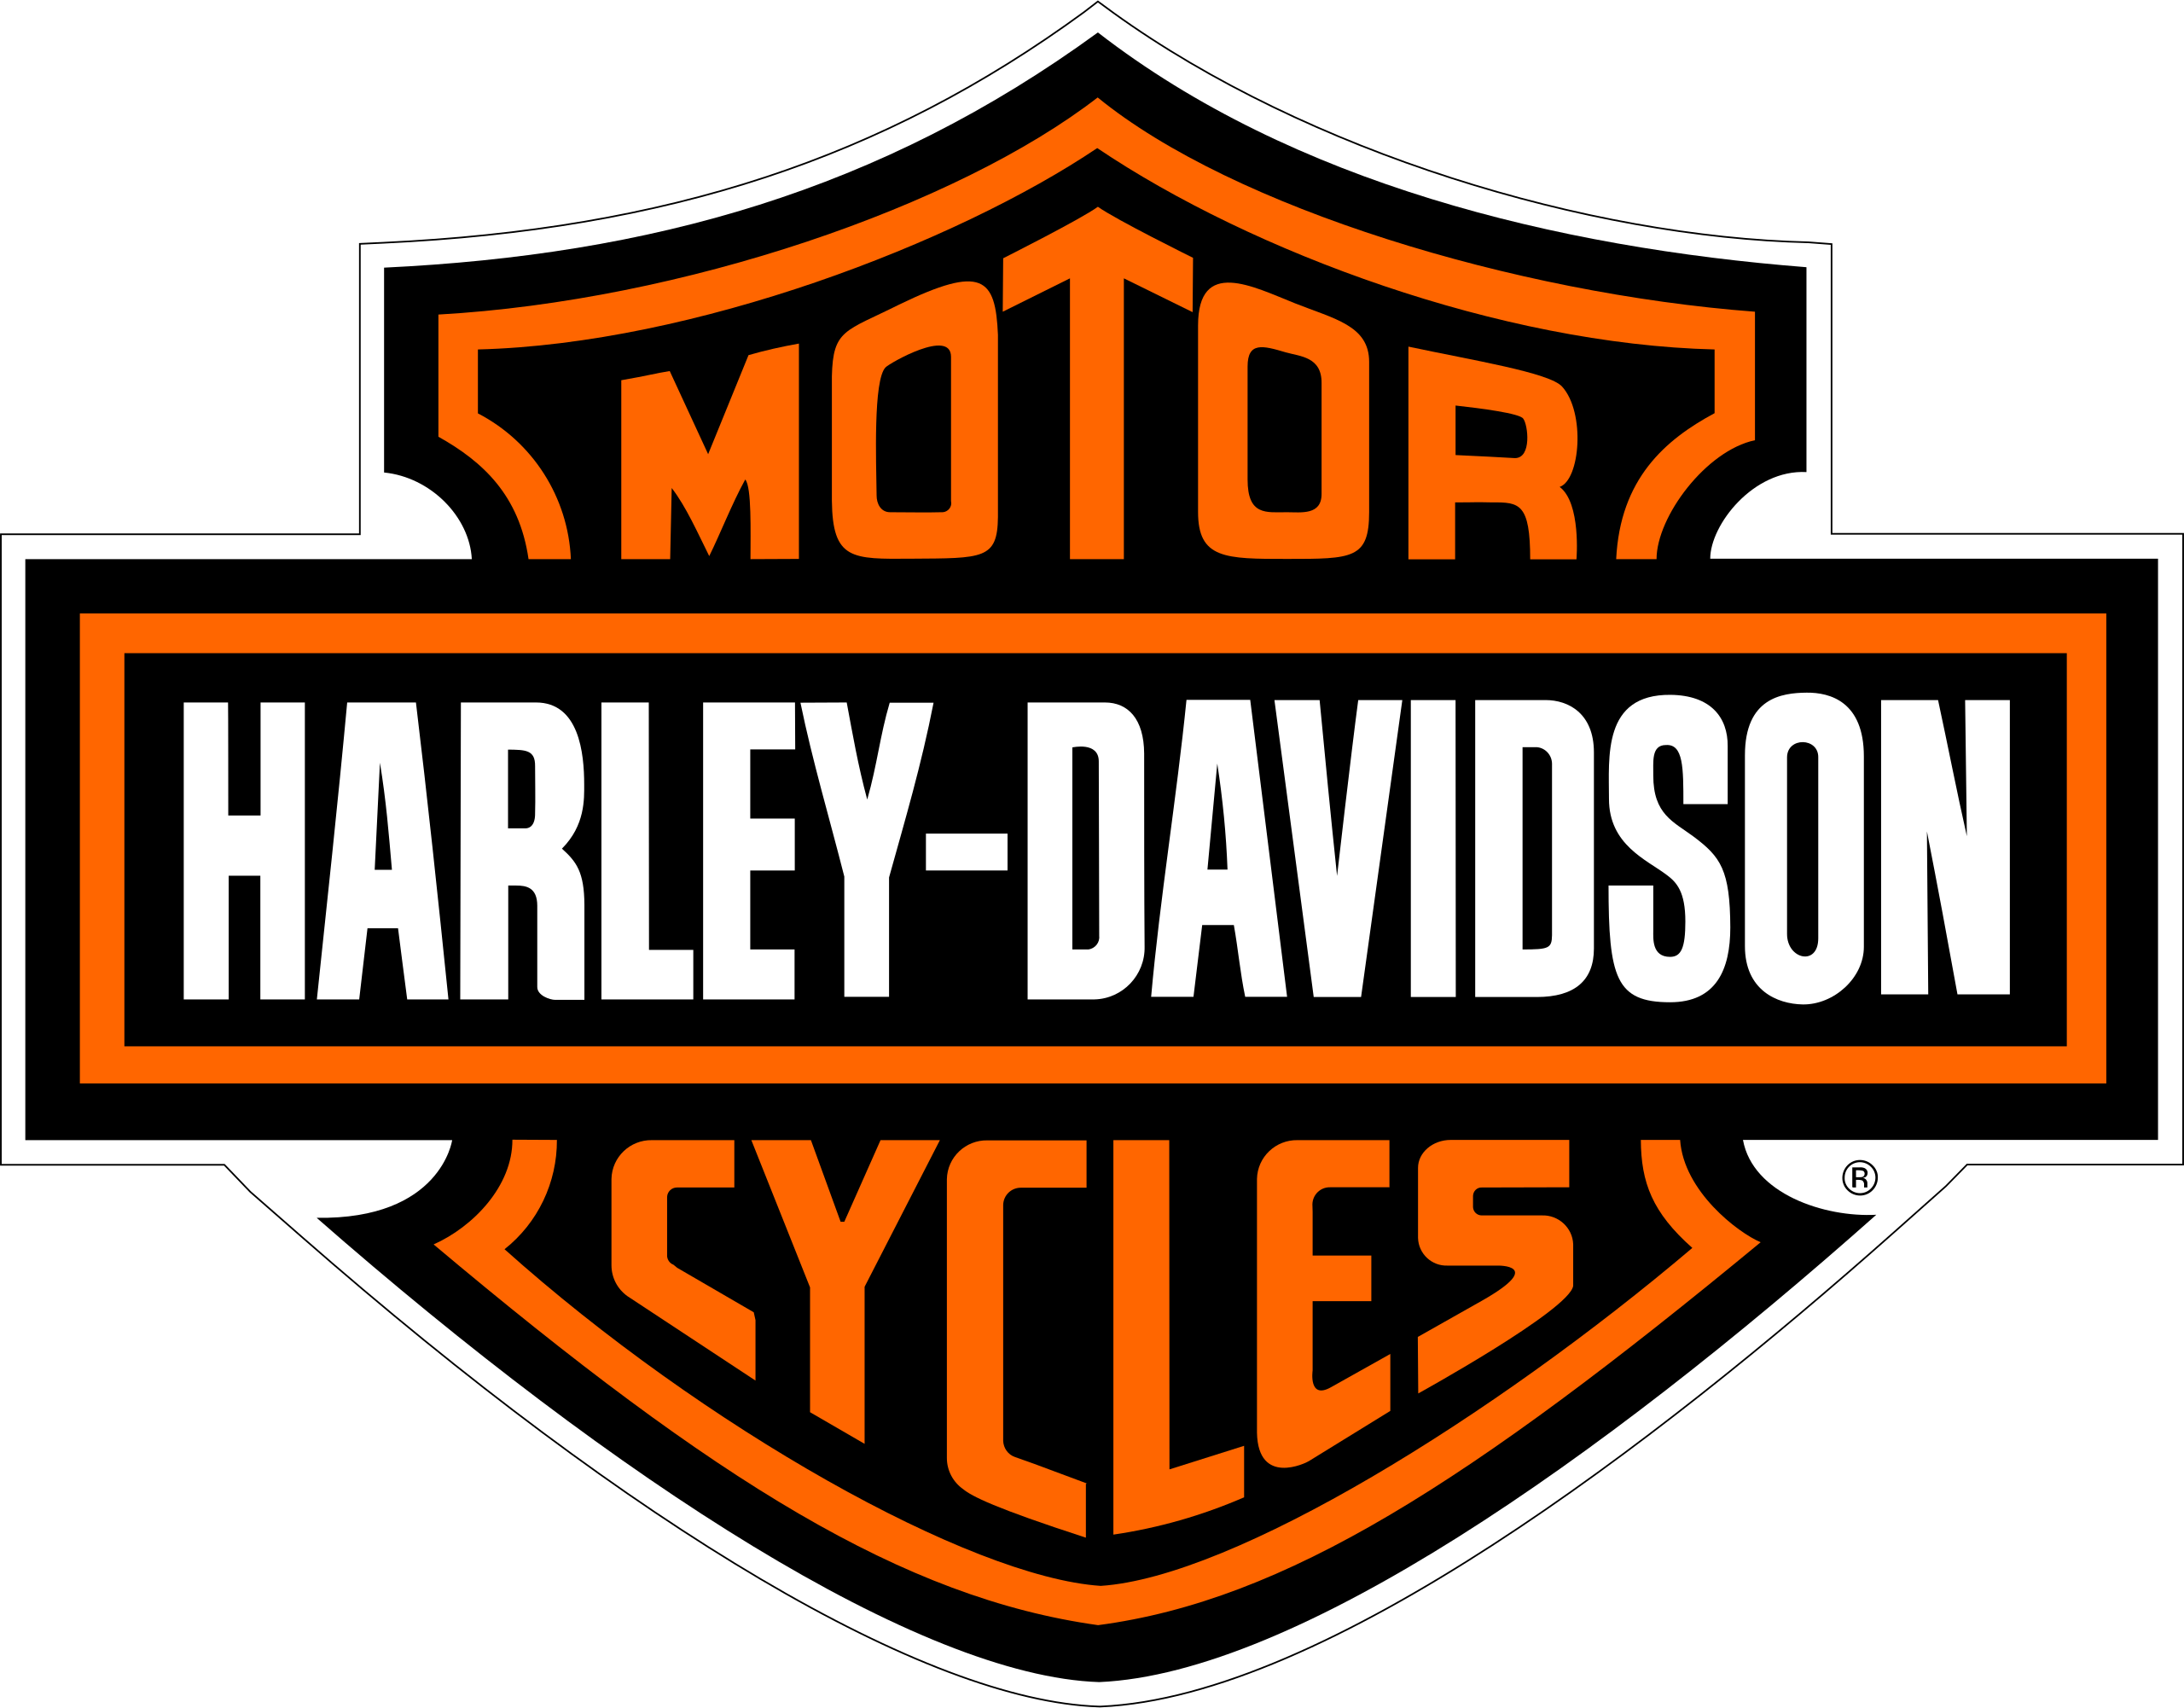 Harley Davidson Png Logo - KibrisPDR